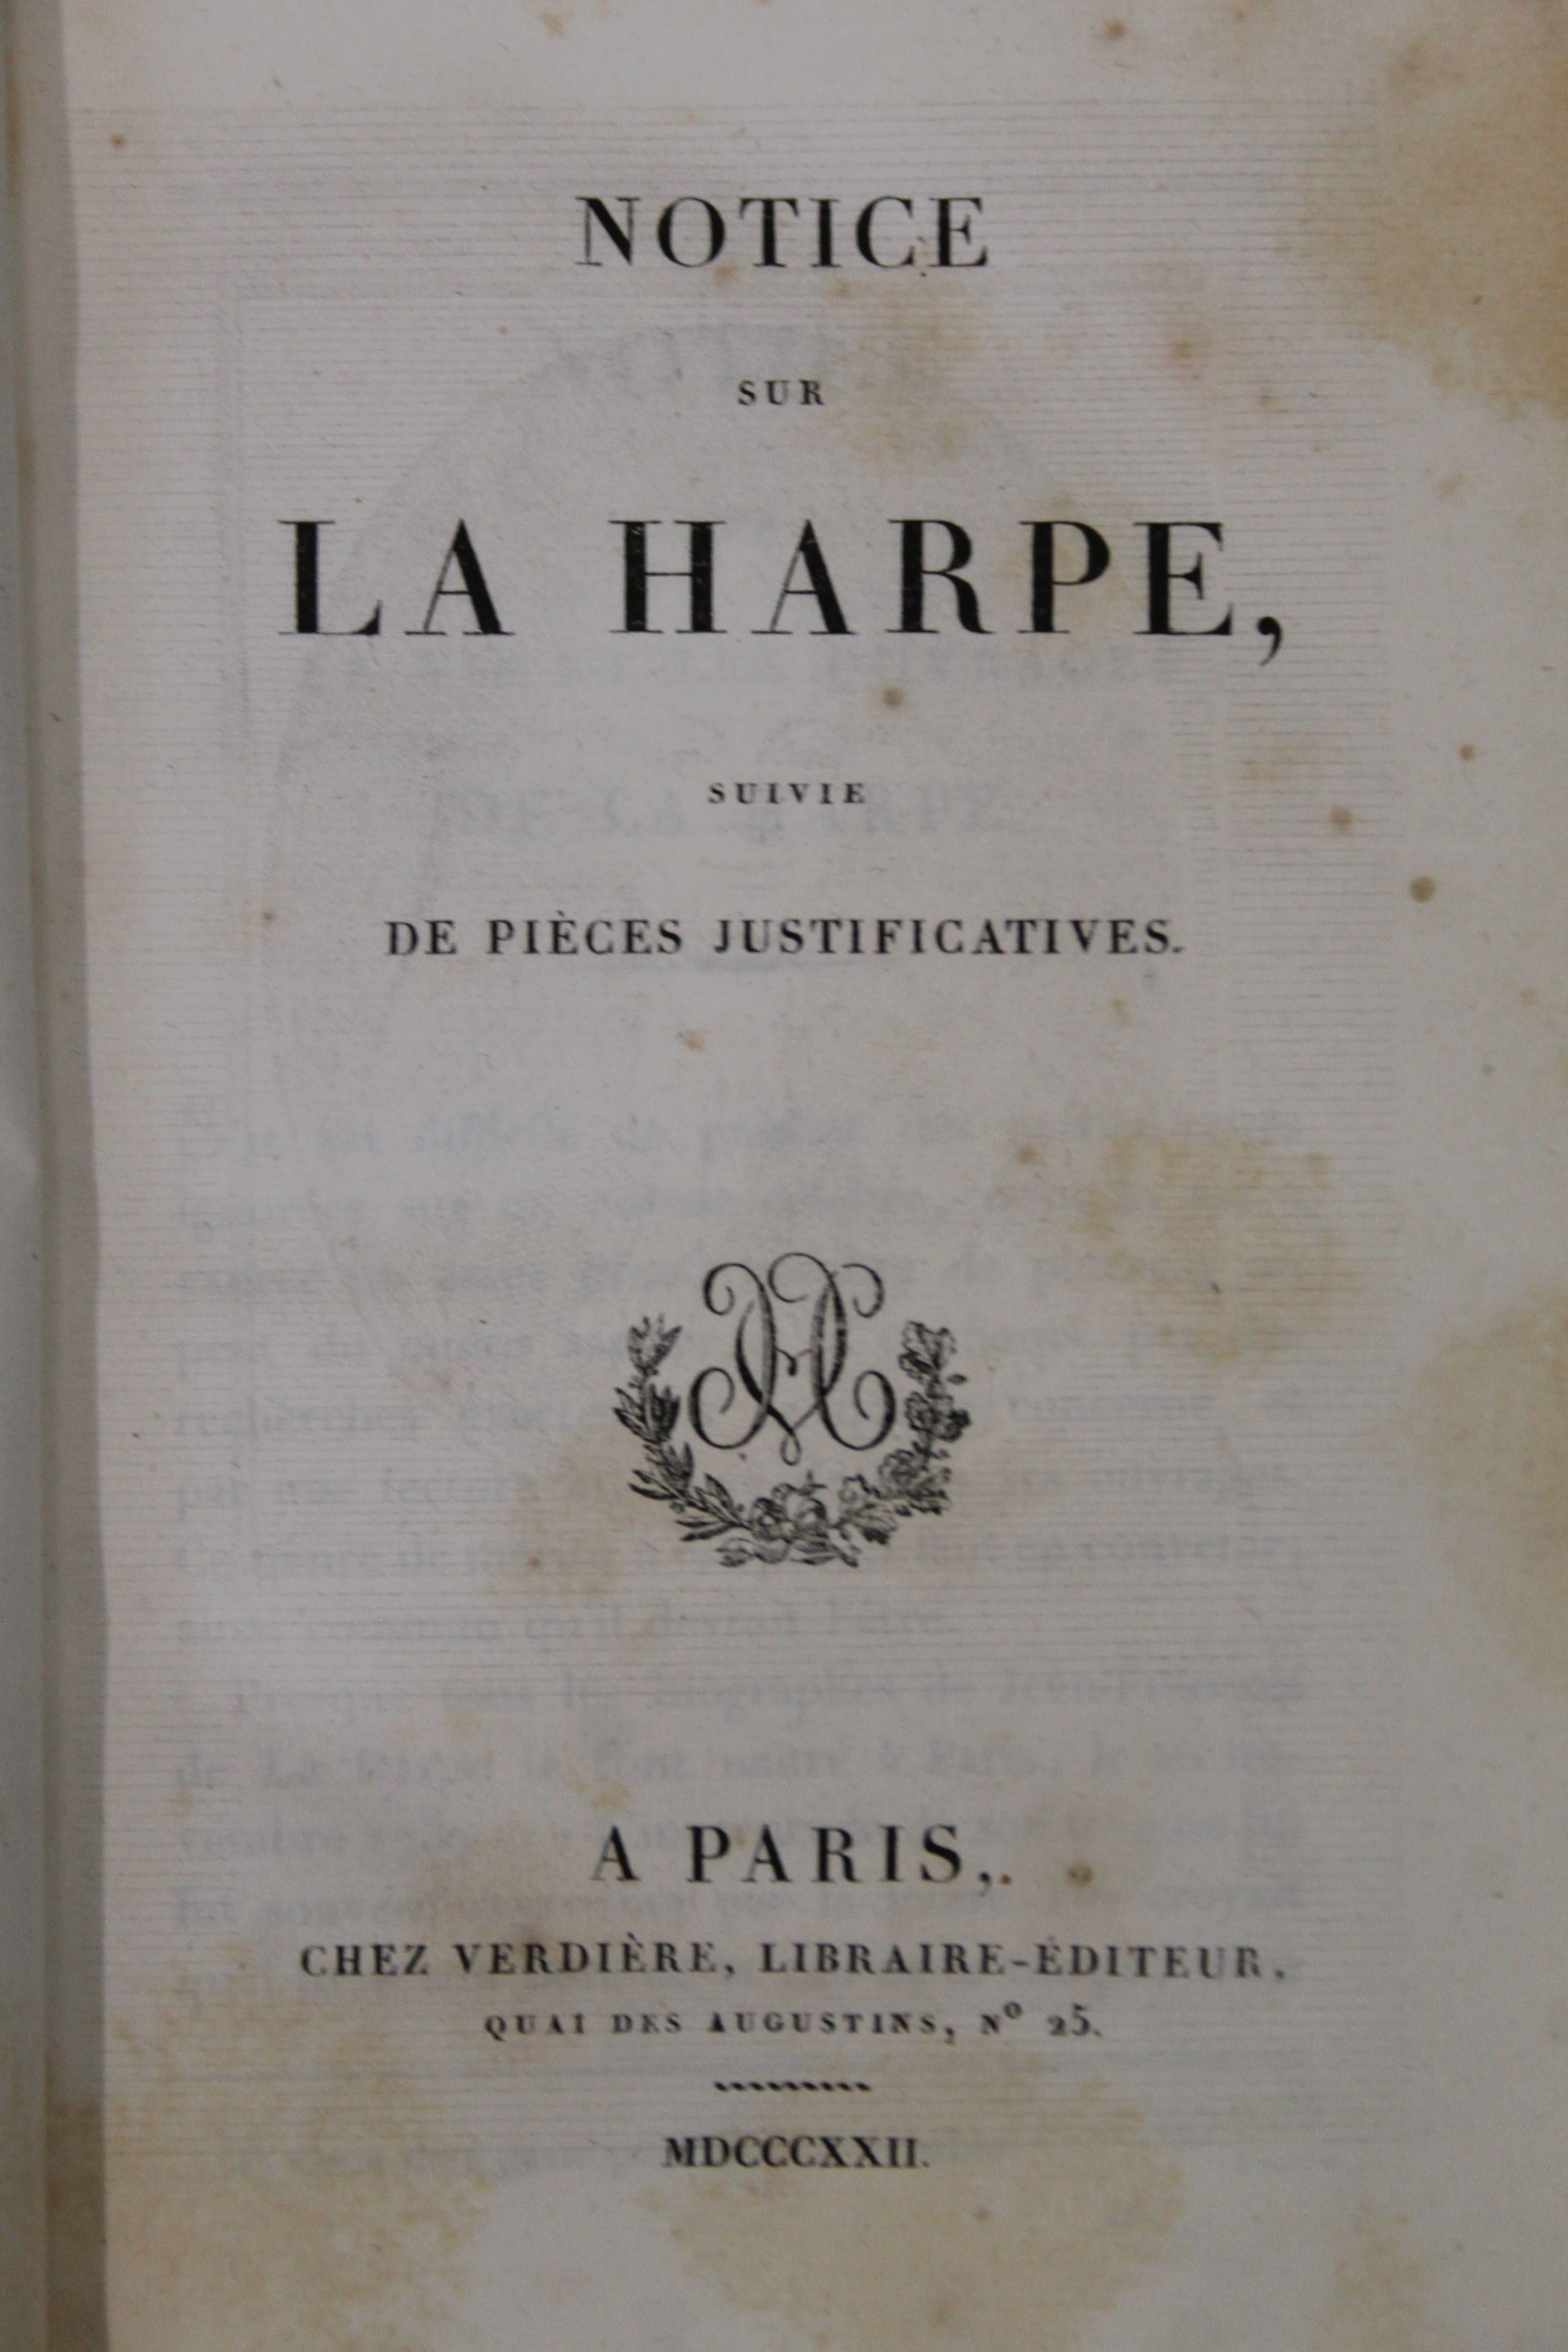 La Harpe (Jean-Francois de), Oeuvres Accompagnes d'Une Notice Sur la Use et sur Ouvrages, 16 vols, - Image 9 of 23